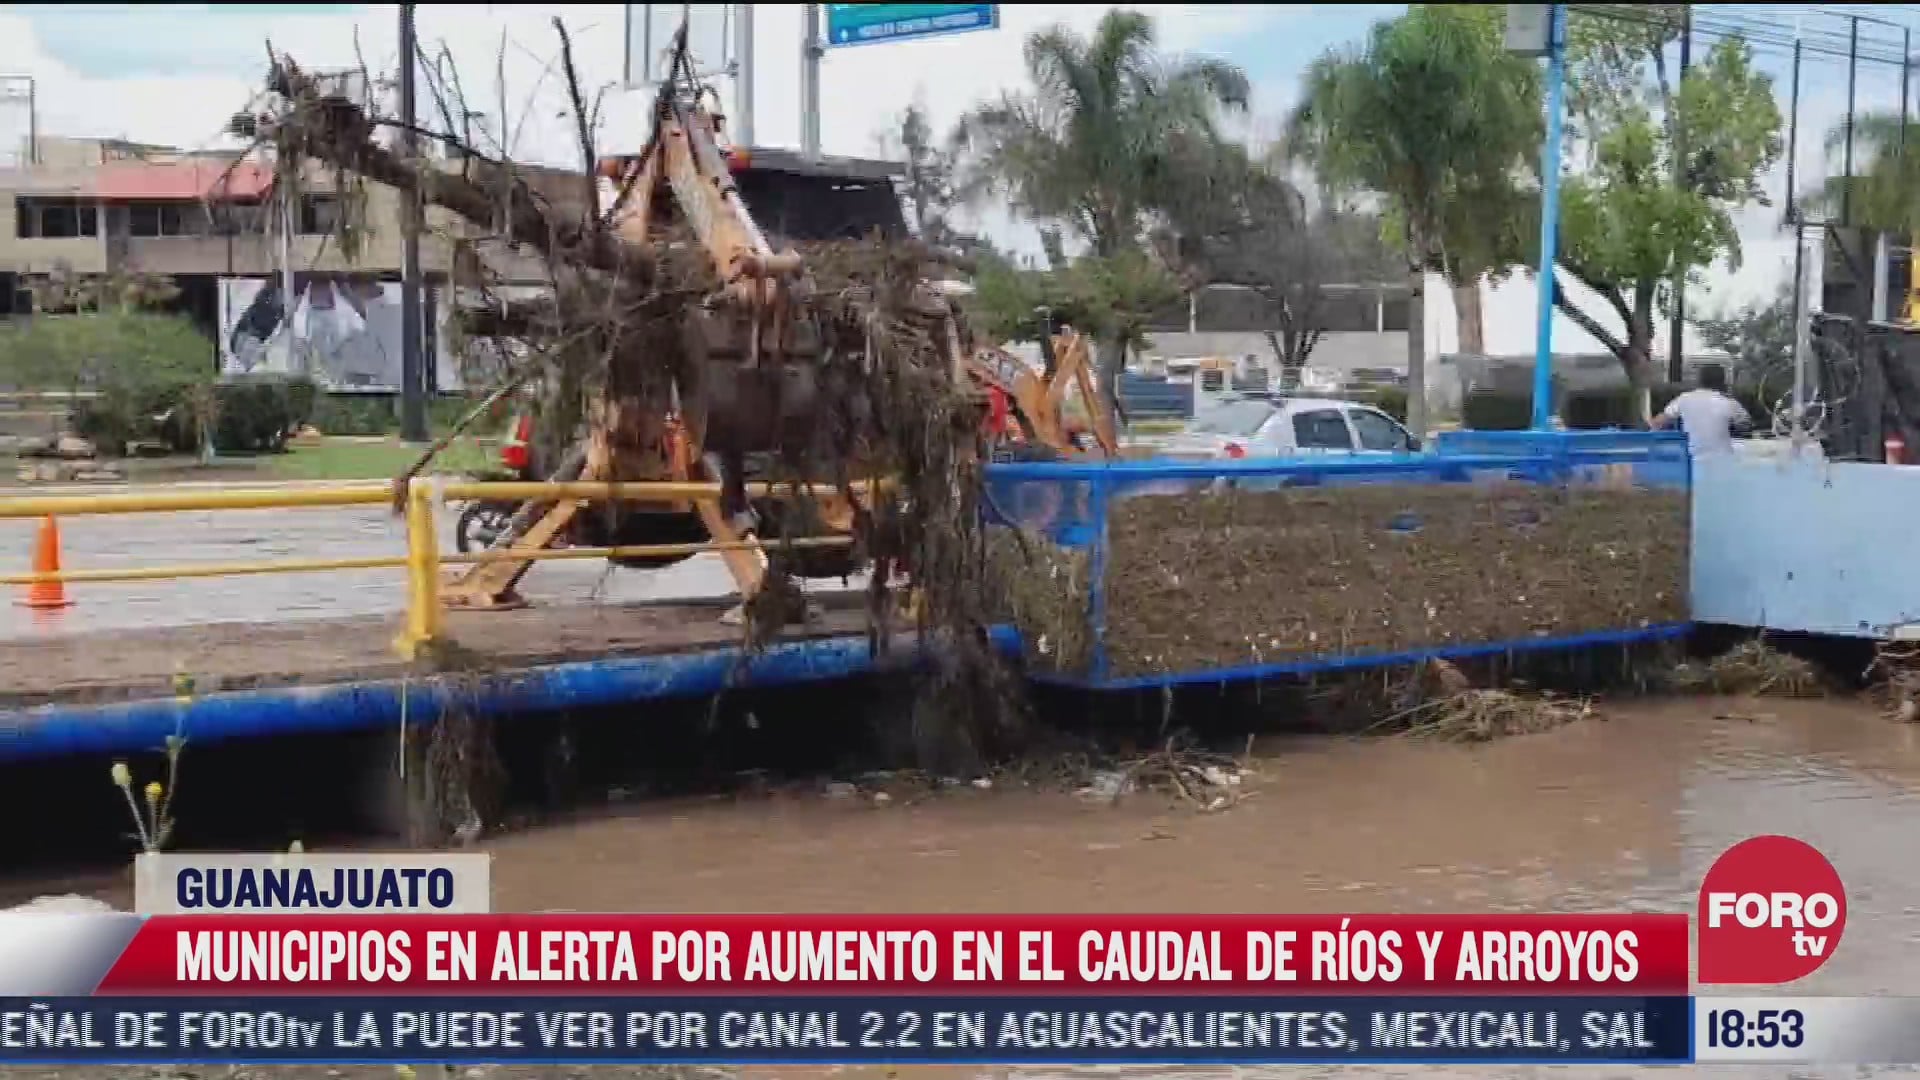 lluvias torrenciales provocan inundaciones en guanajuato